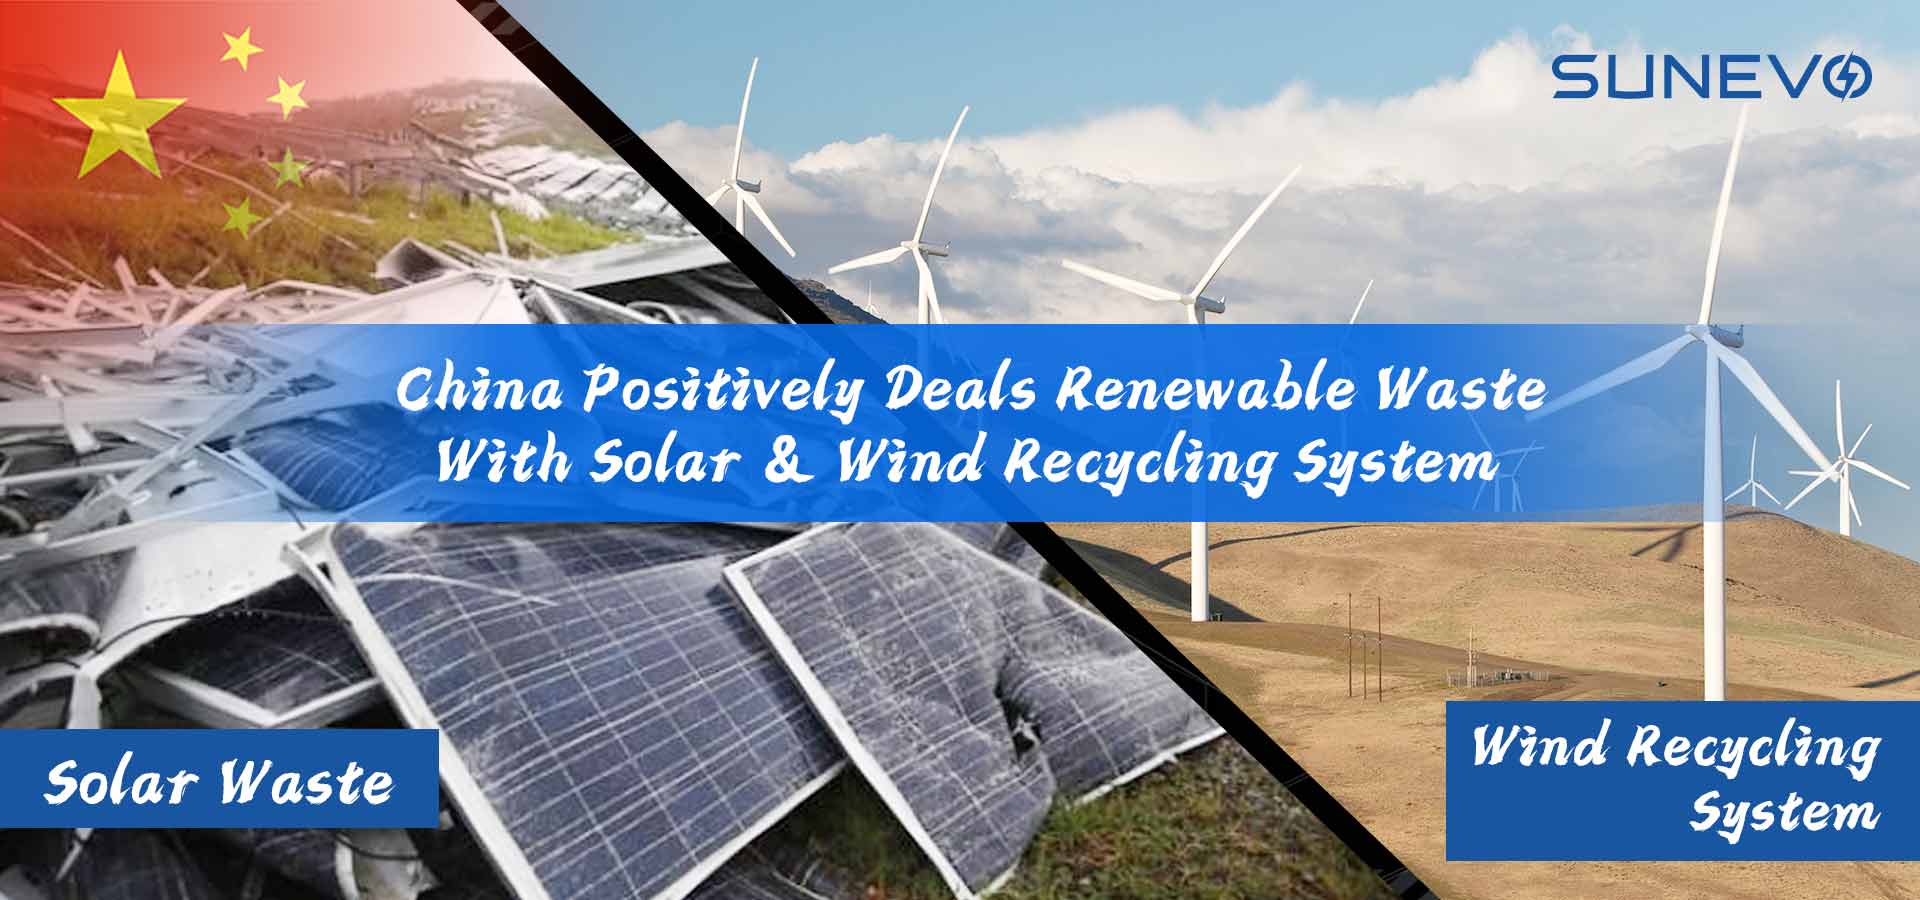 تتعامل الصين مع النفايات المتجددة من خلال أنظمة إعادة تدوير الطاقة الشمسية وطاقة الرياح